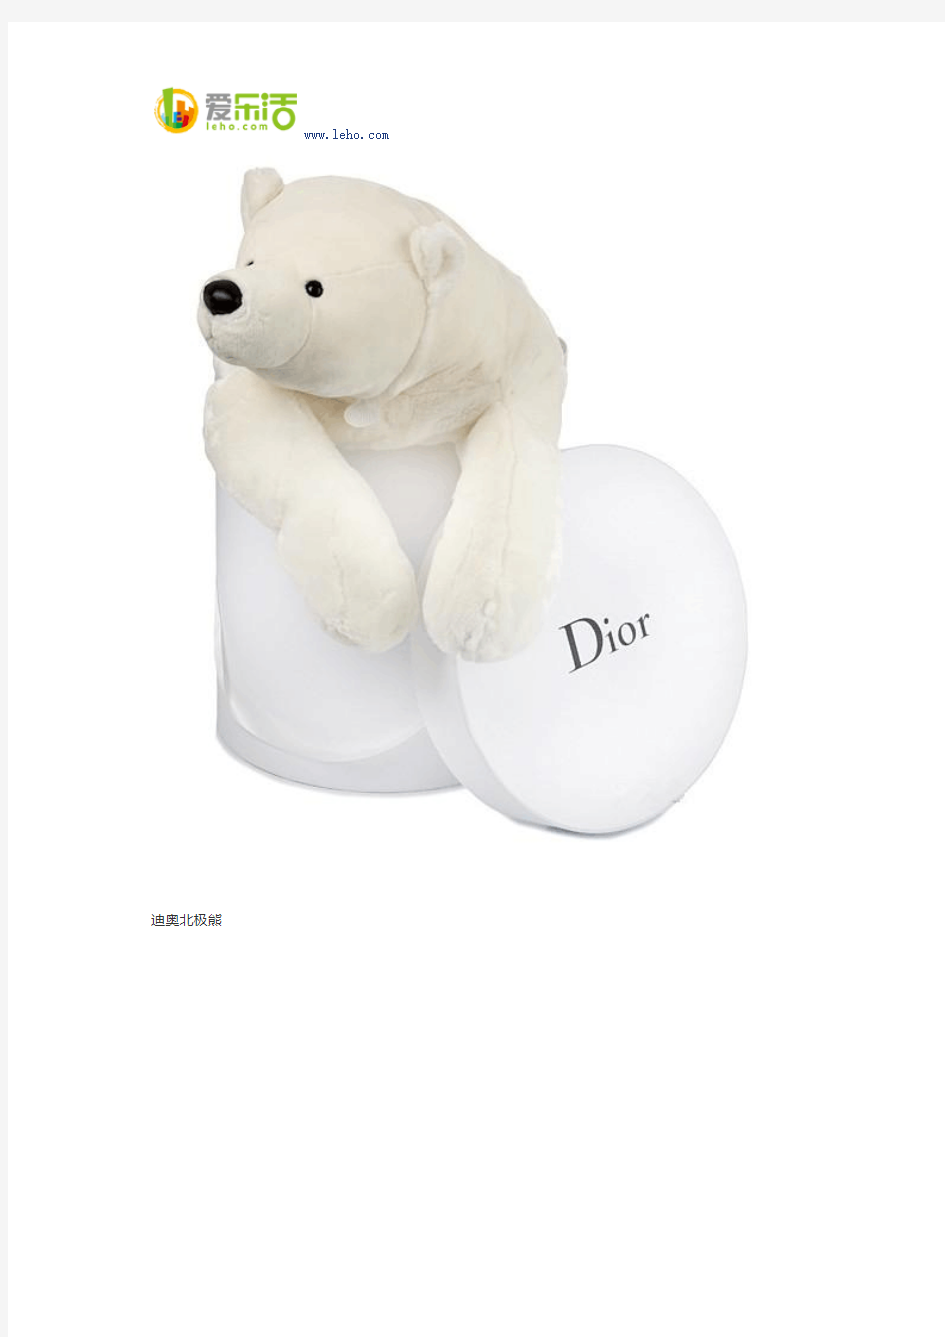 奢侈品牌宝贝迪奥baby dior礼盒装超级巨型毛绒玩具熊